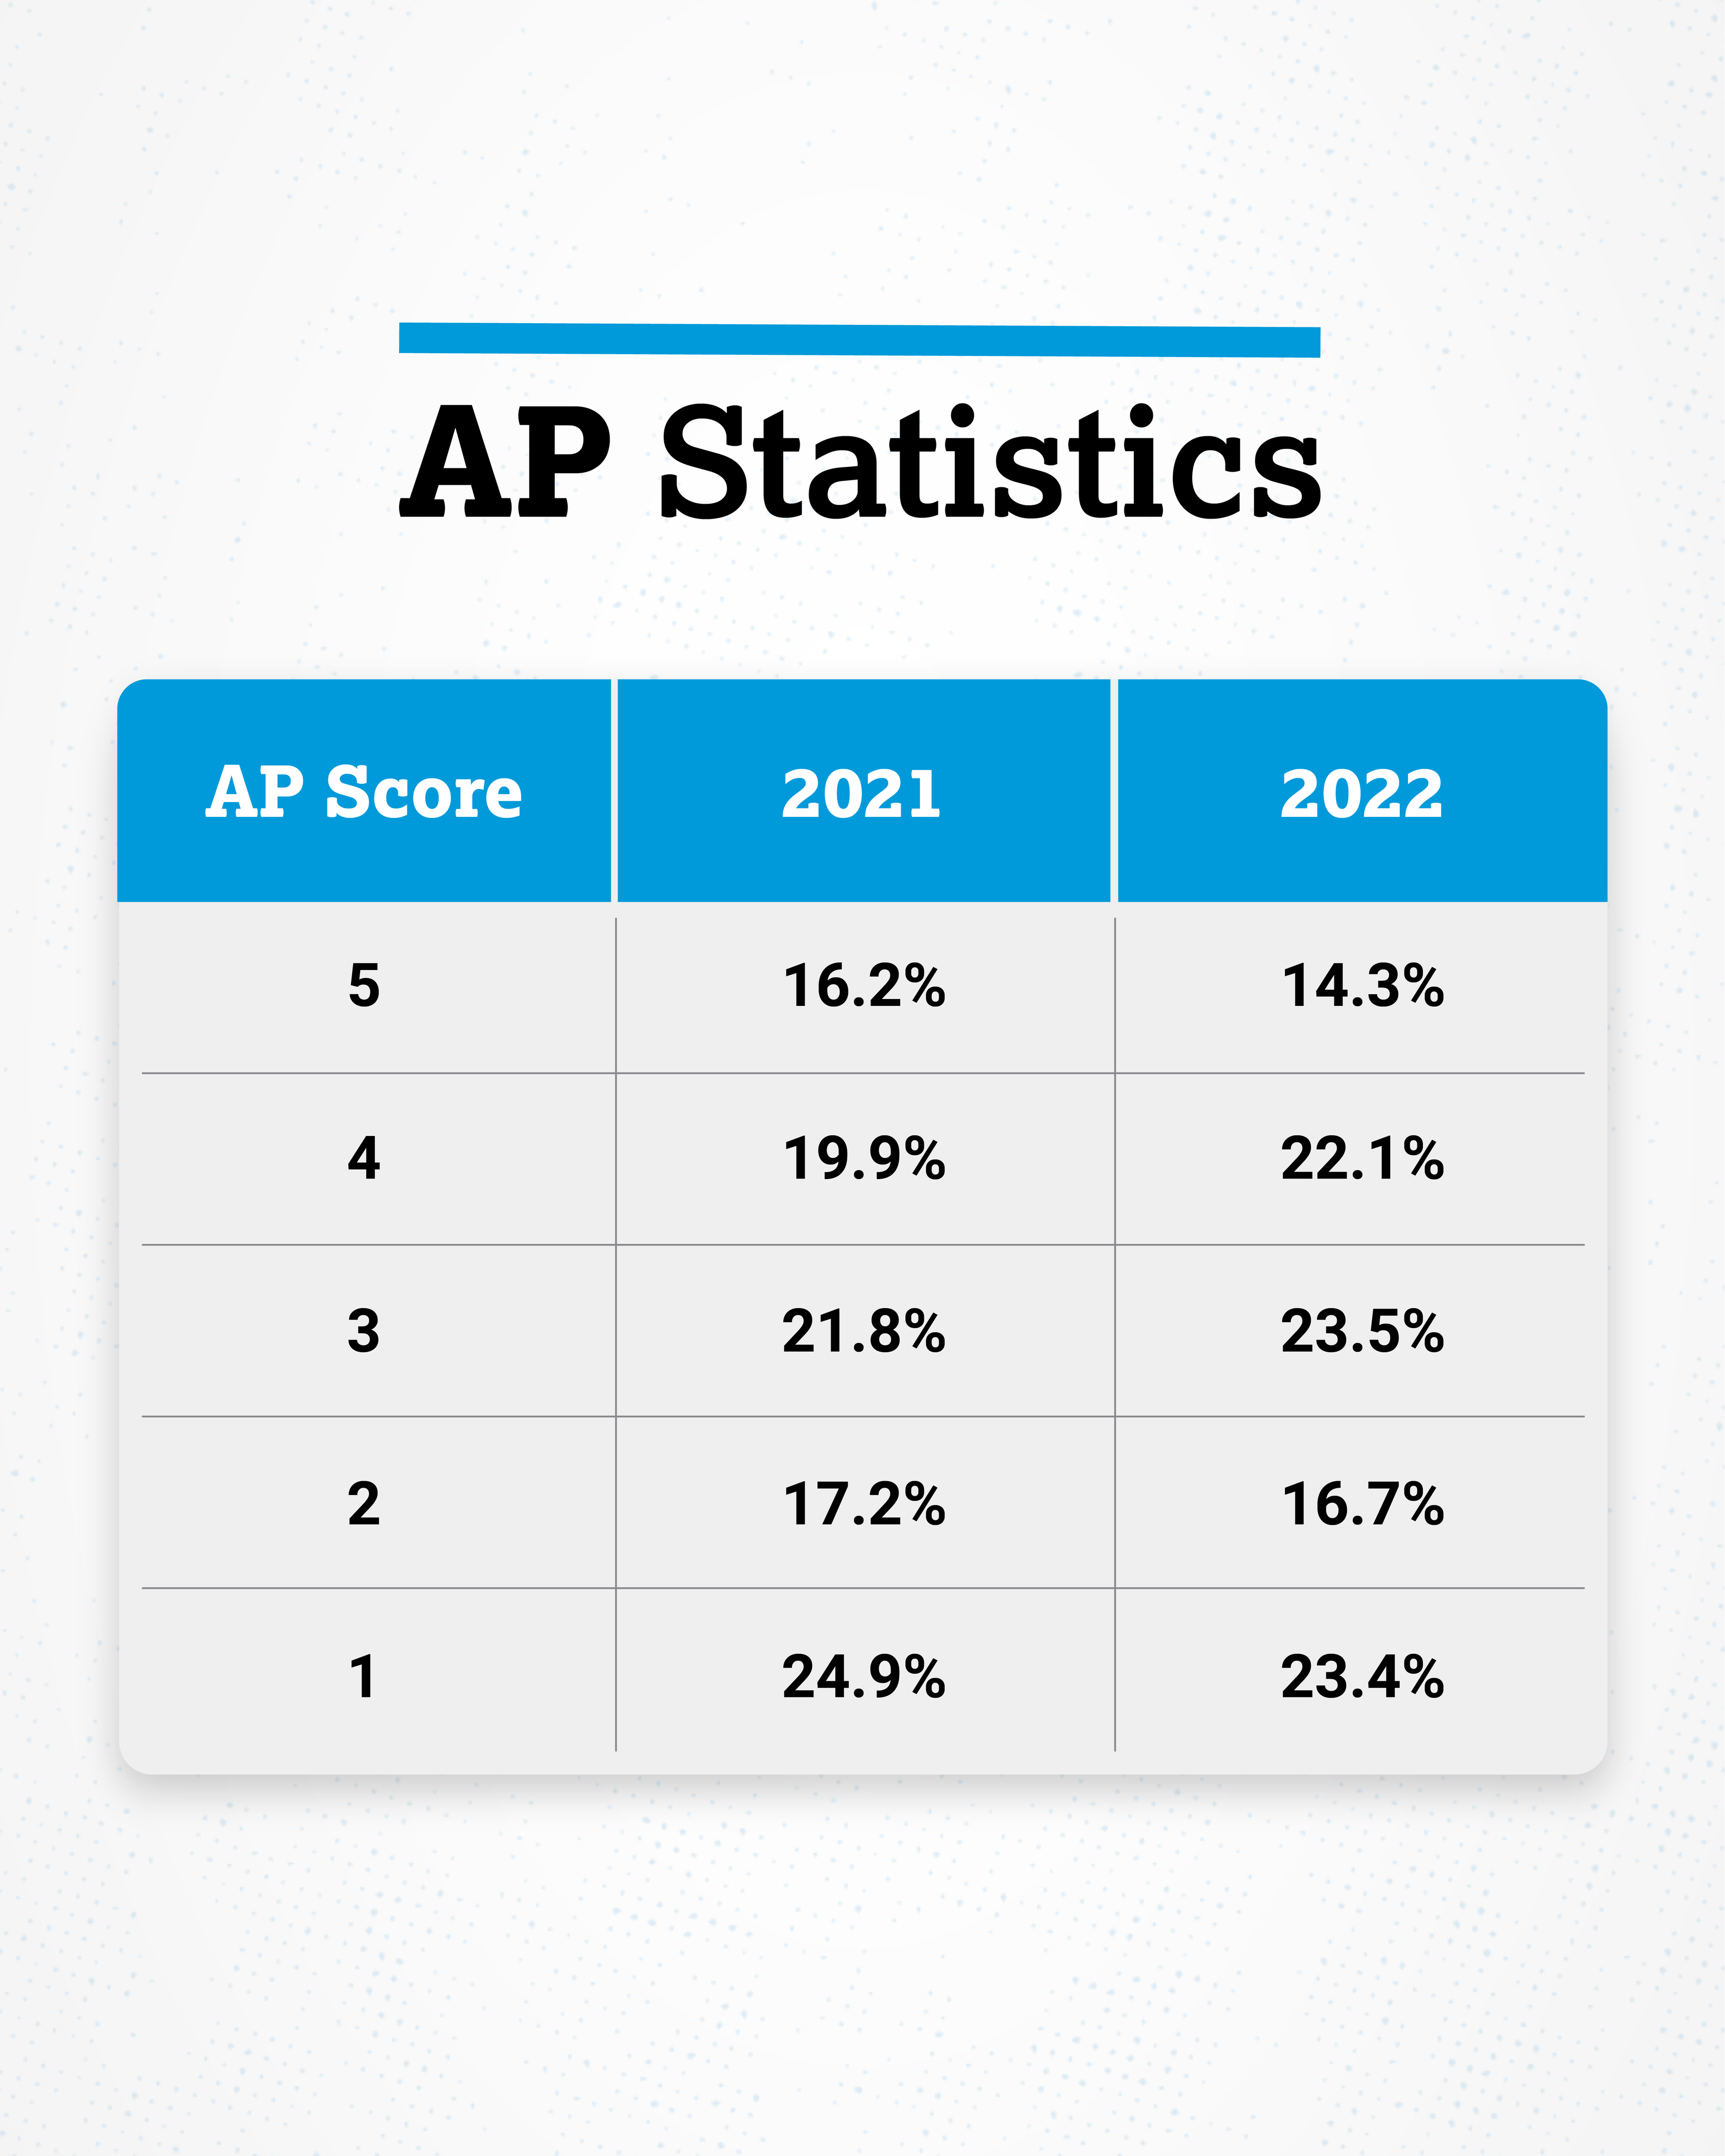 When Do 2018 AP Scores Come Out?